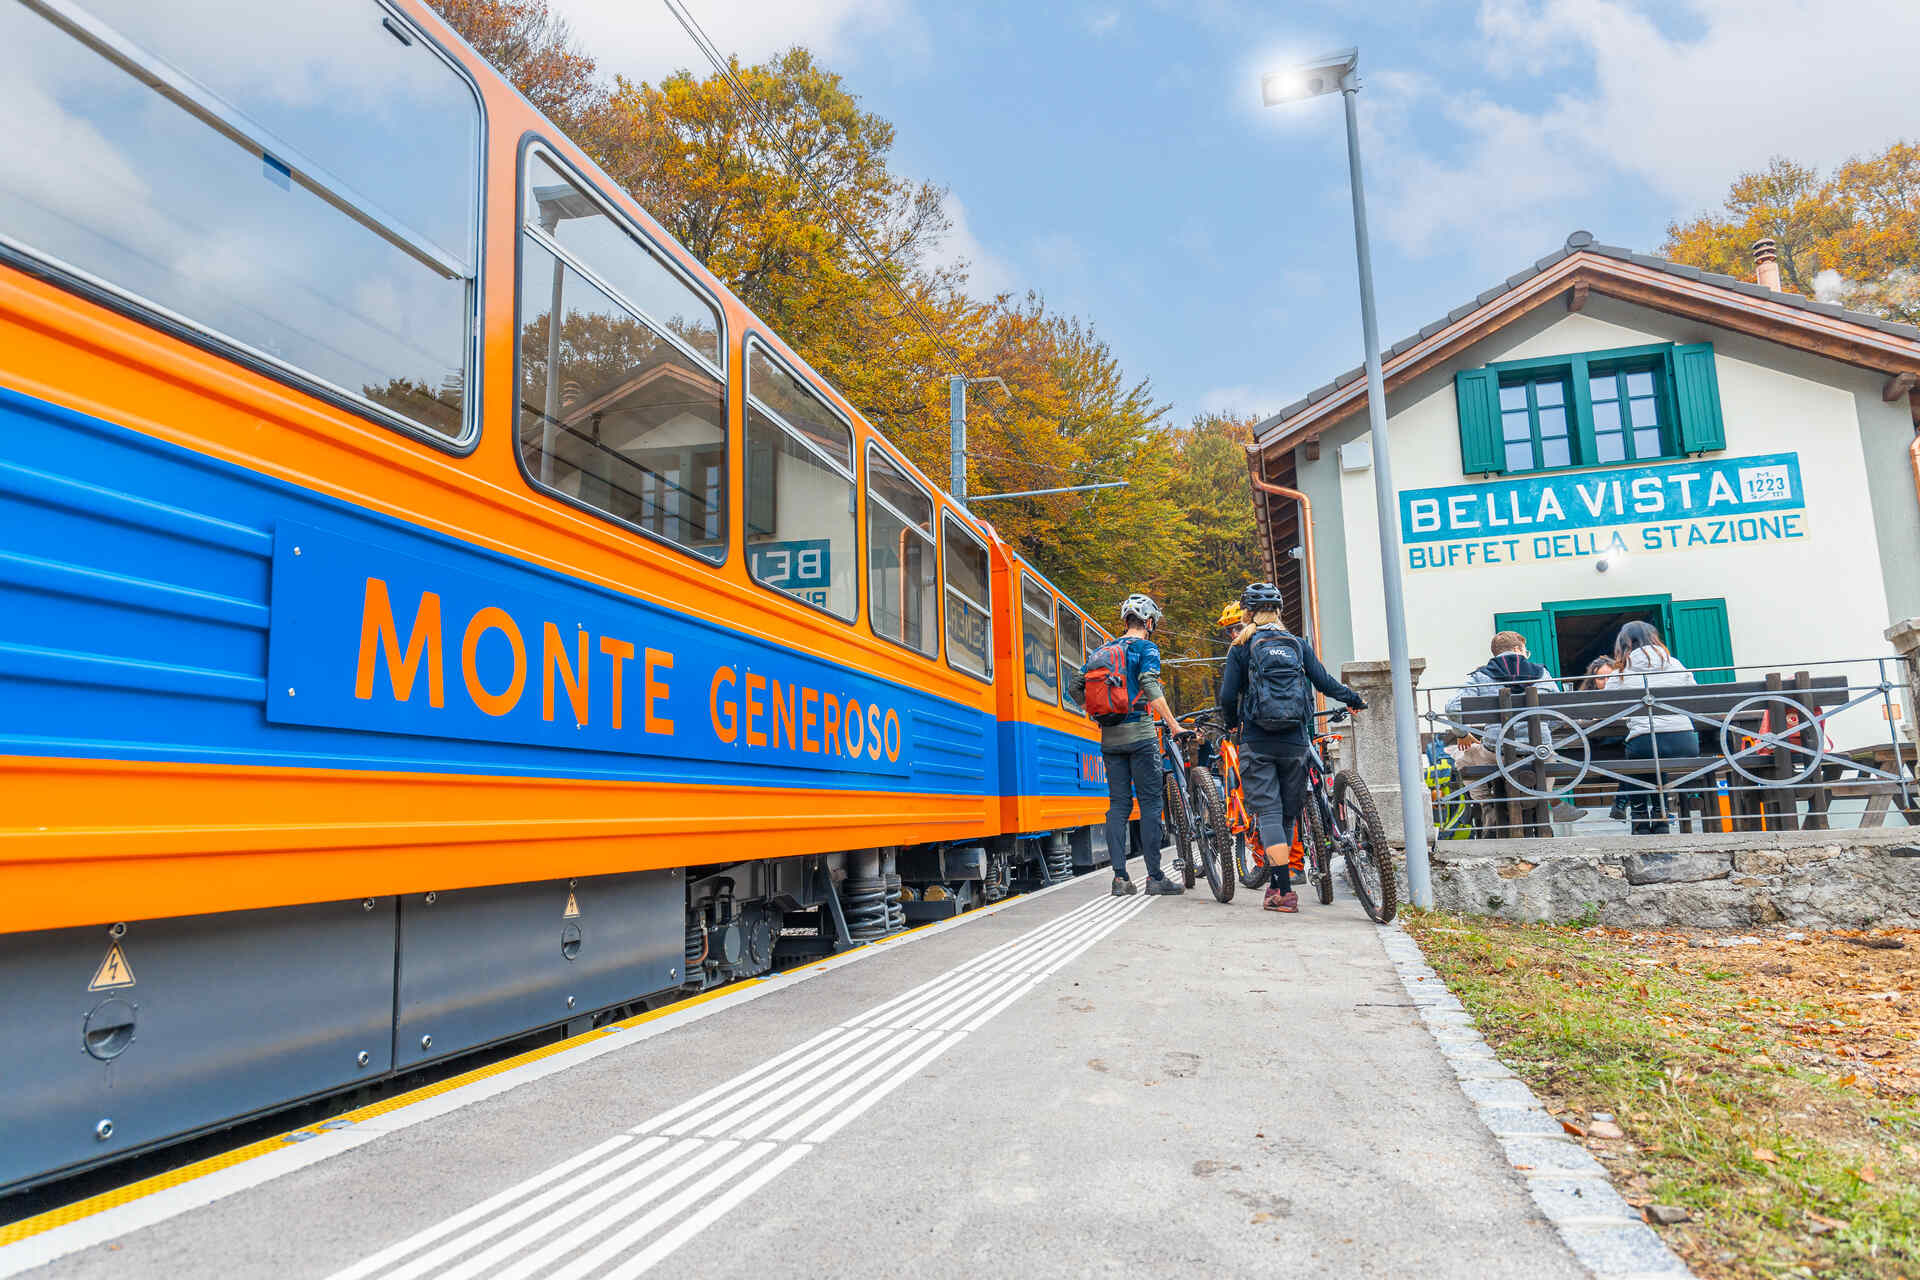 Monte Generoso: els clàssics vagons blaus i taronges del ferrocarril